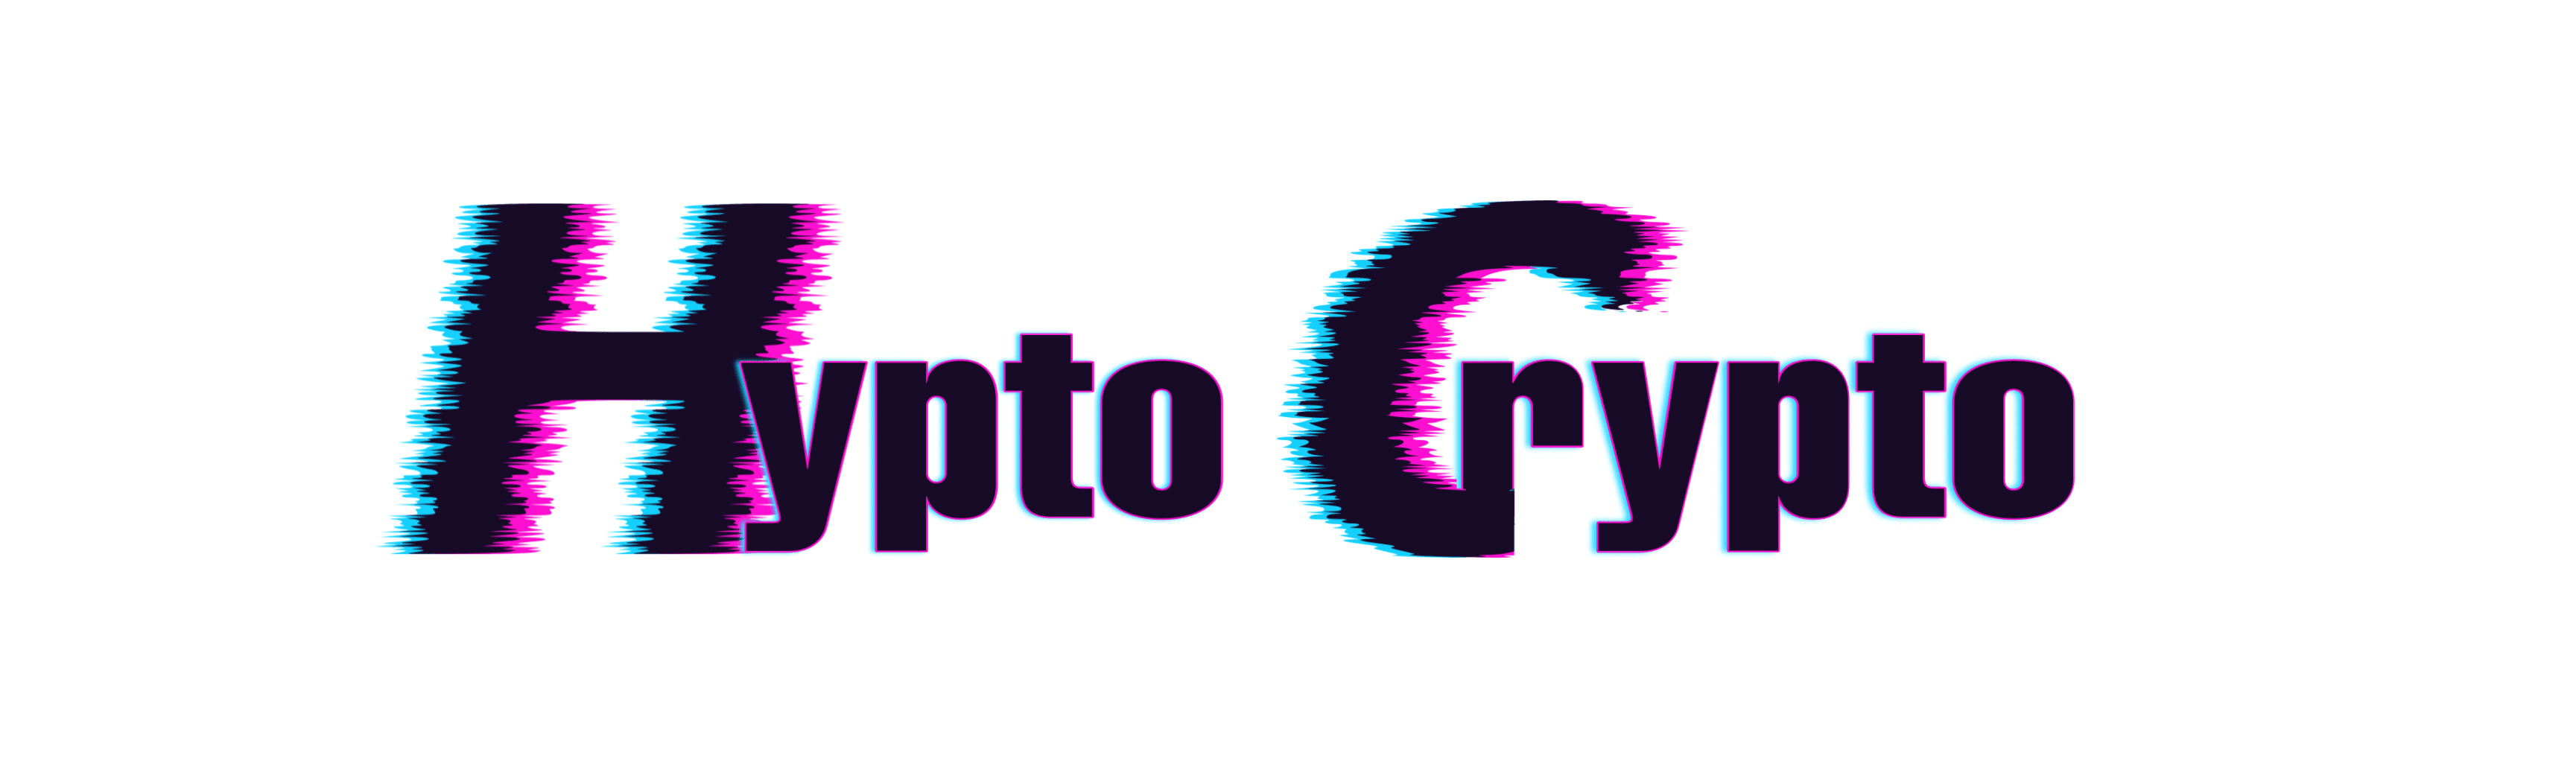 HyptoCrypto 横幅